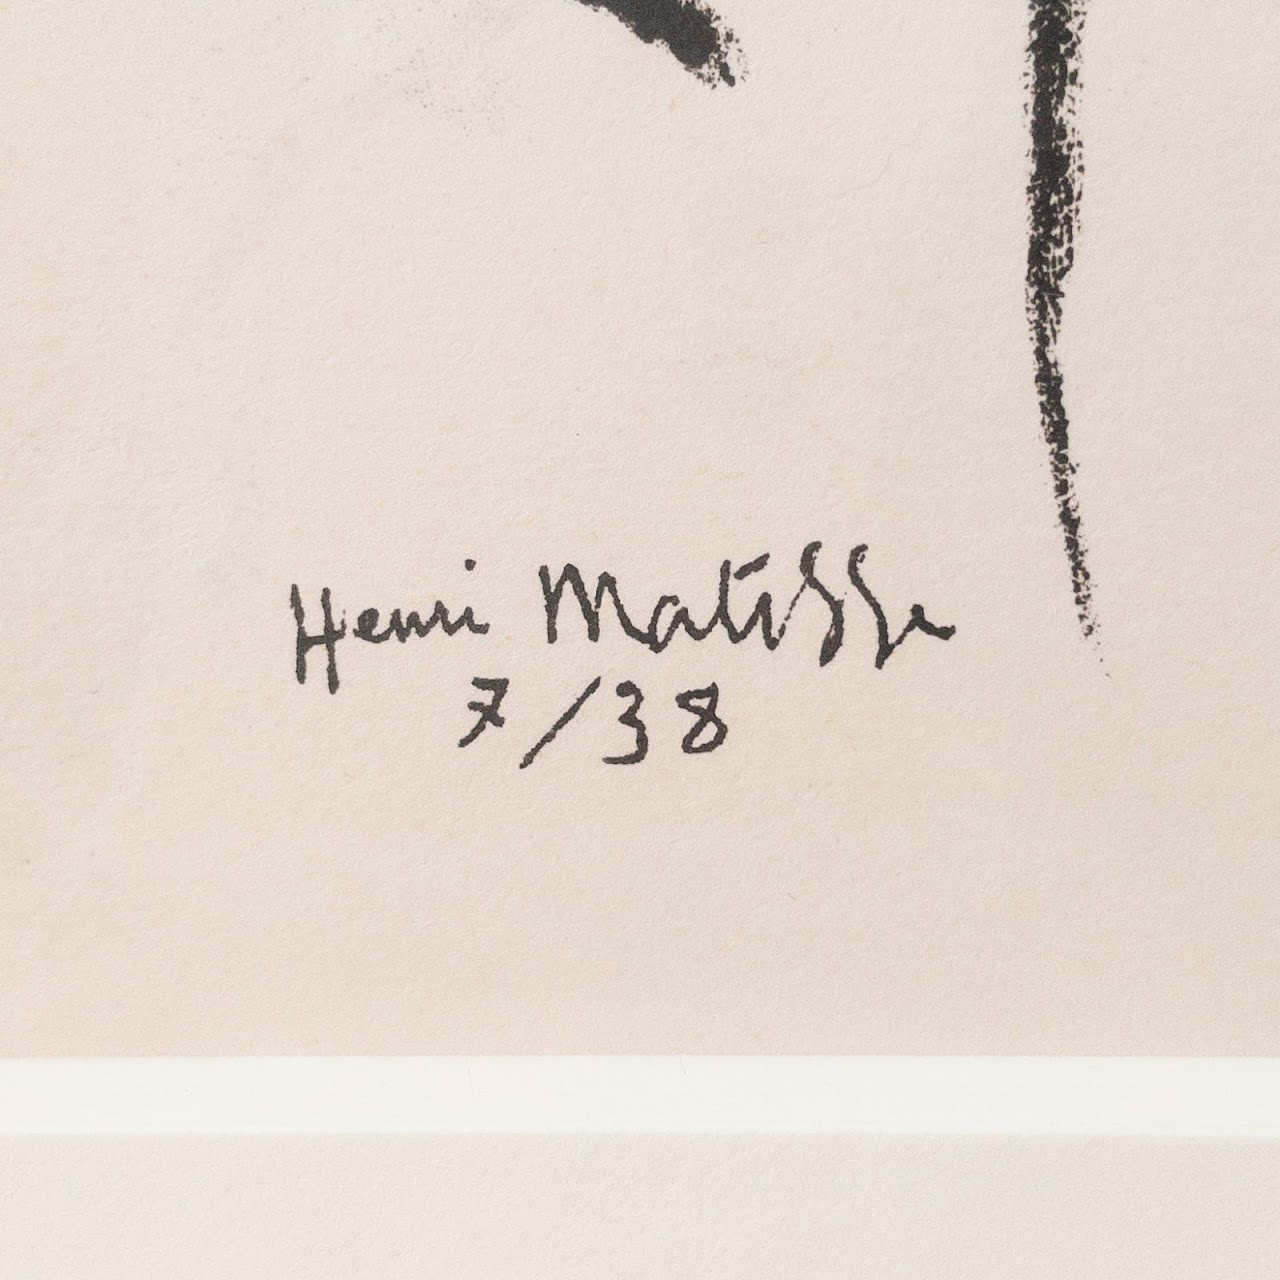 Paul Klee & Henri Matisse Framed Original Lithographs